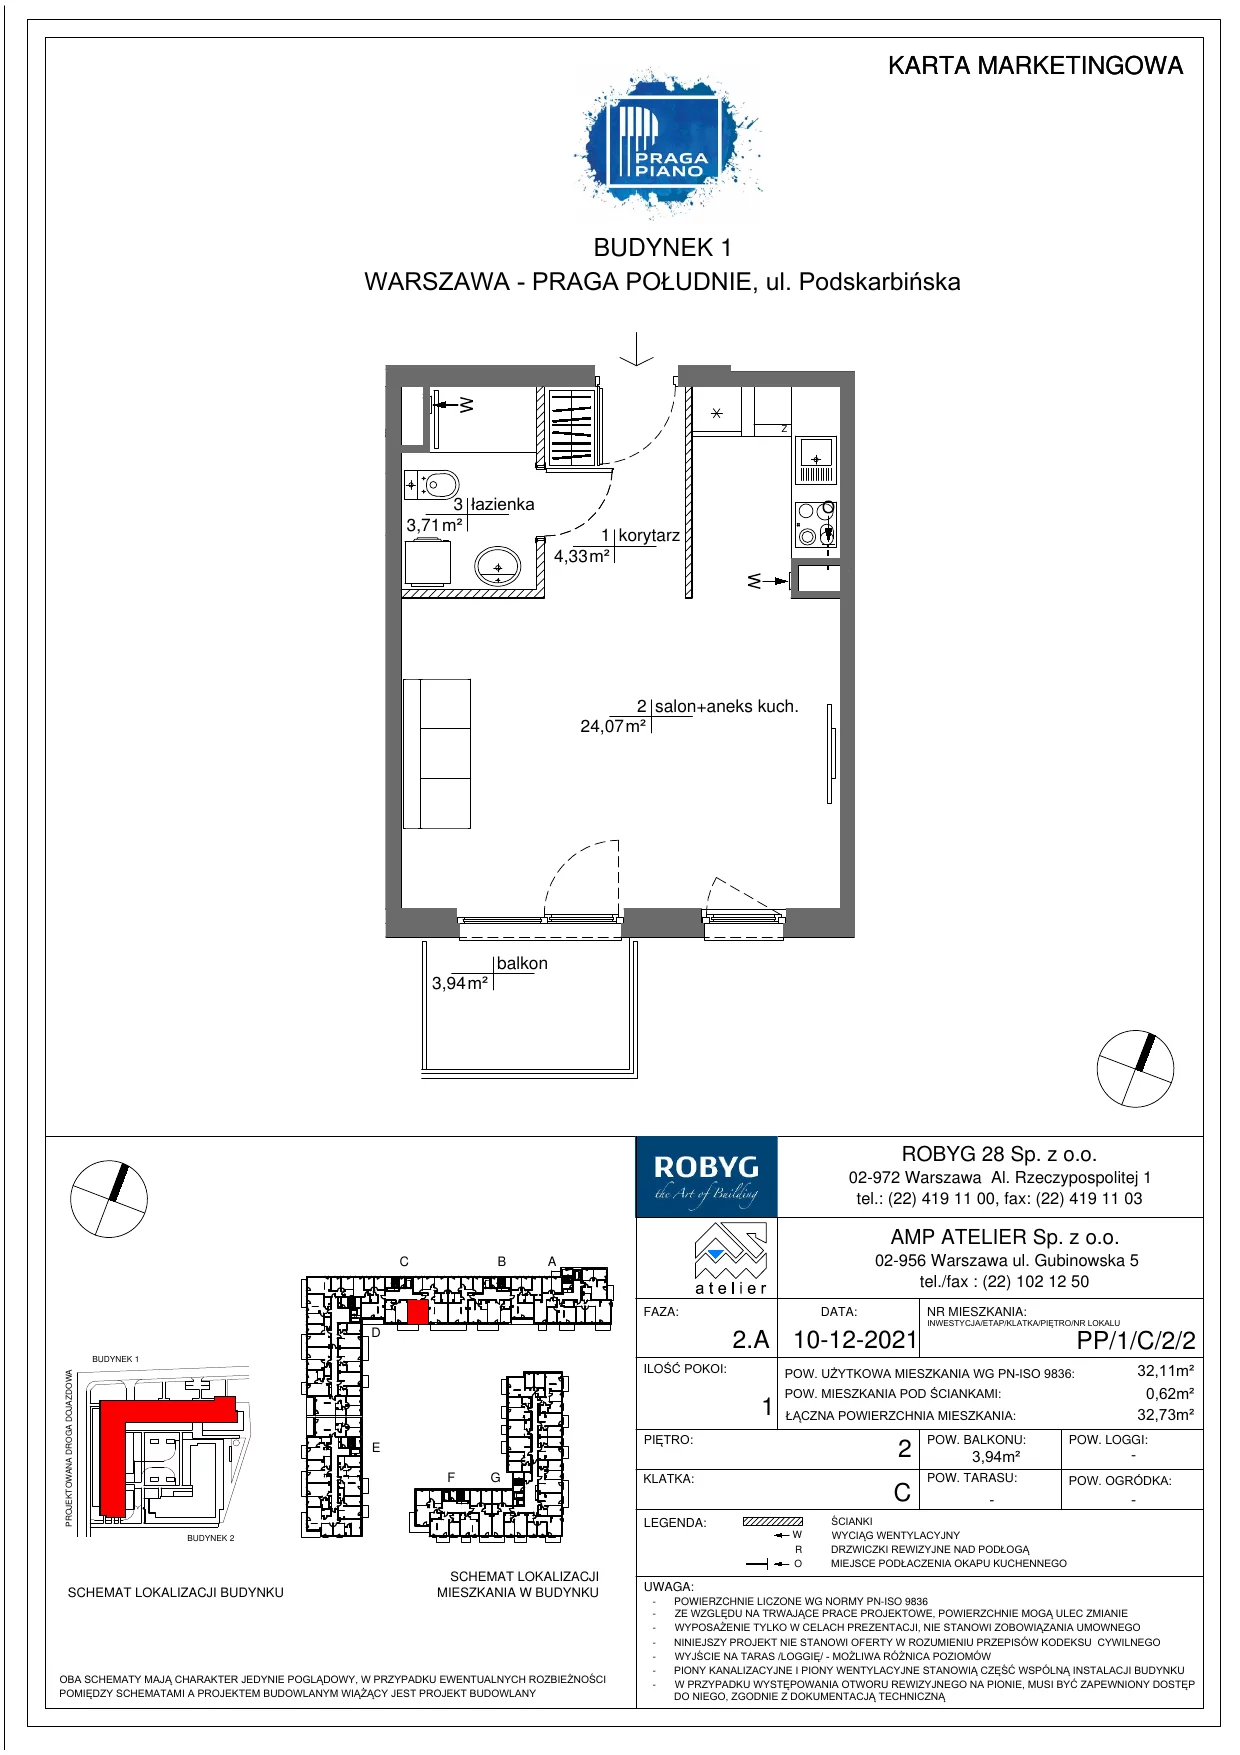 Mieszkanie 32,11 m², piętro 2, oferta nr PP/1/C/2/2, Praga Piano, Warszawa, Praga Południe, Kamionek, ul. Podskarbińska